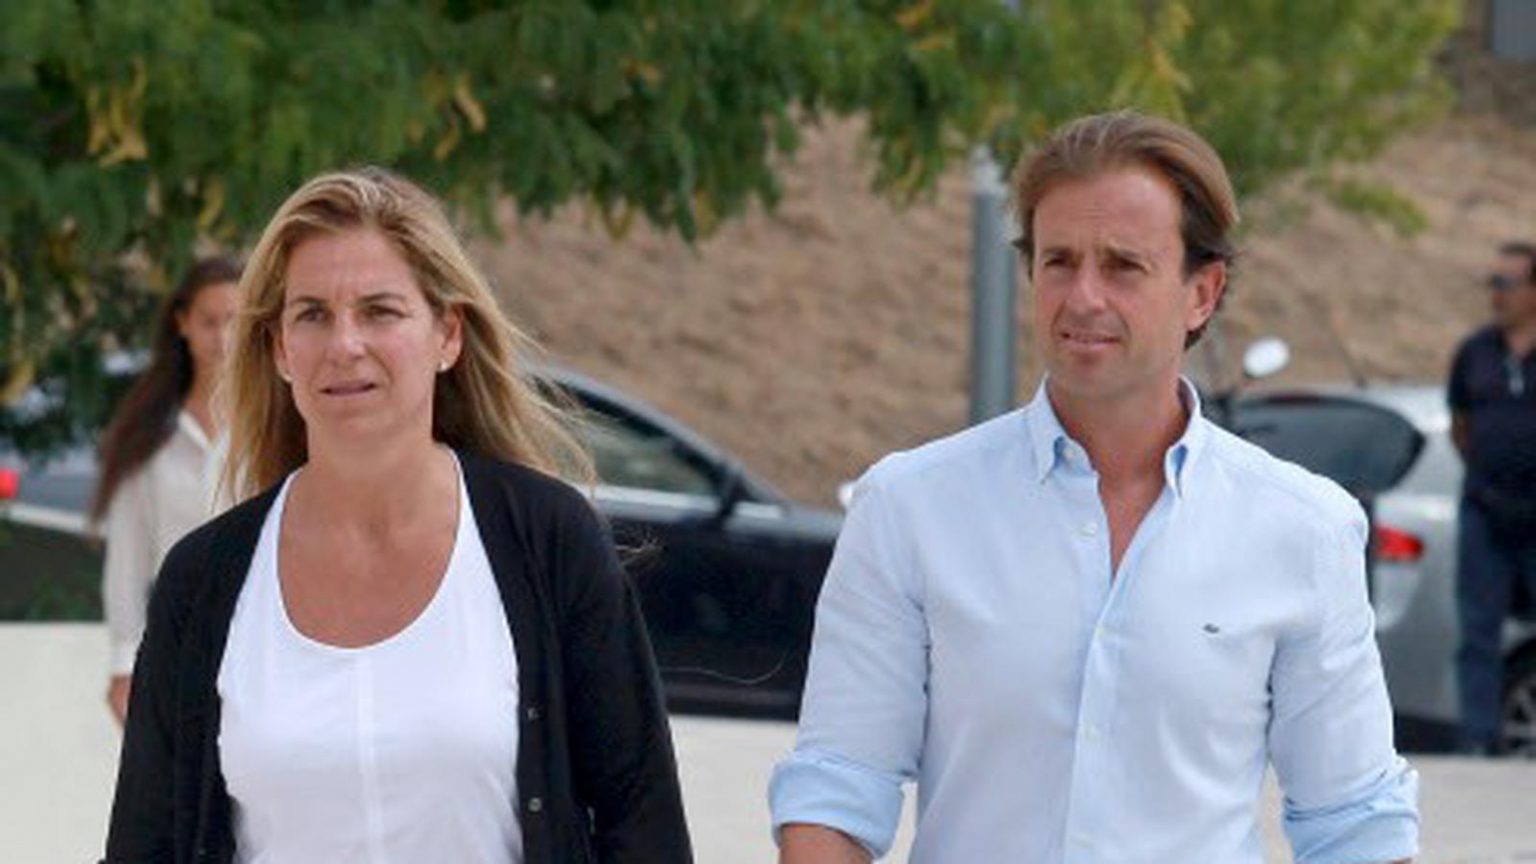 Giro inesperado en el divorcio entre Arantxa Sánchez Vicario y Josep Santacana